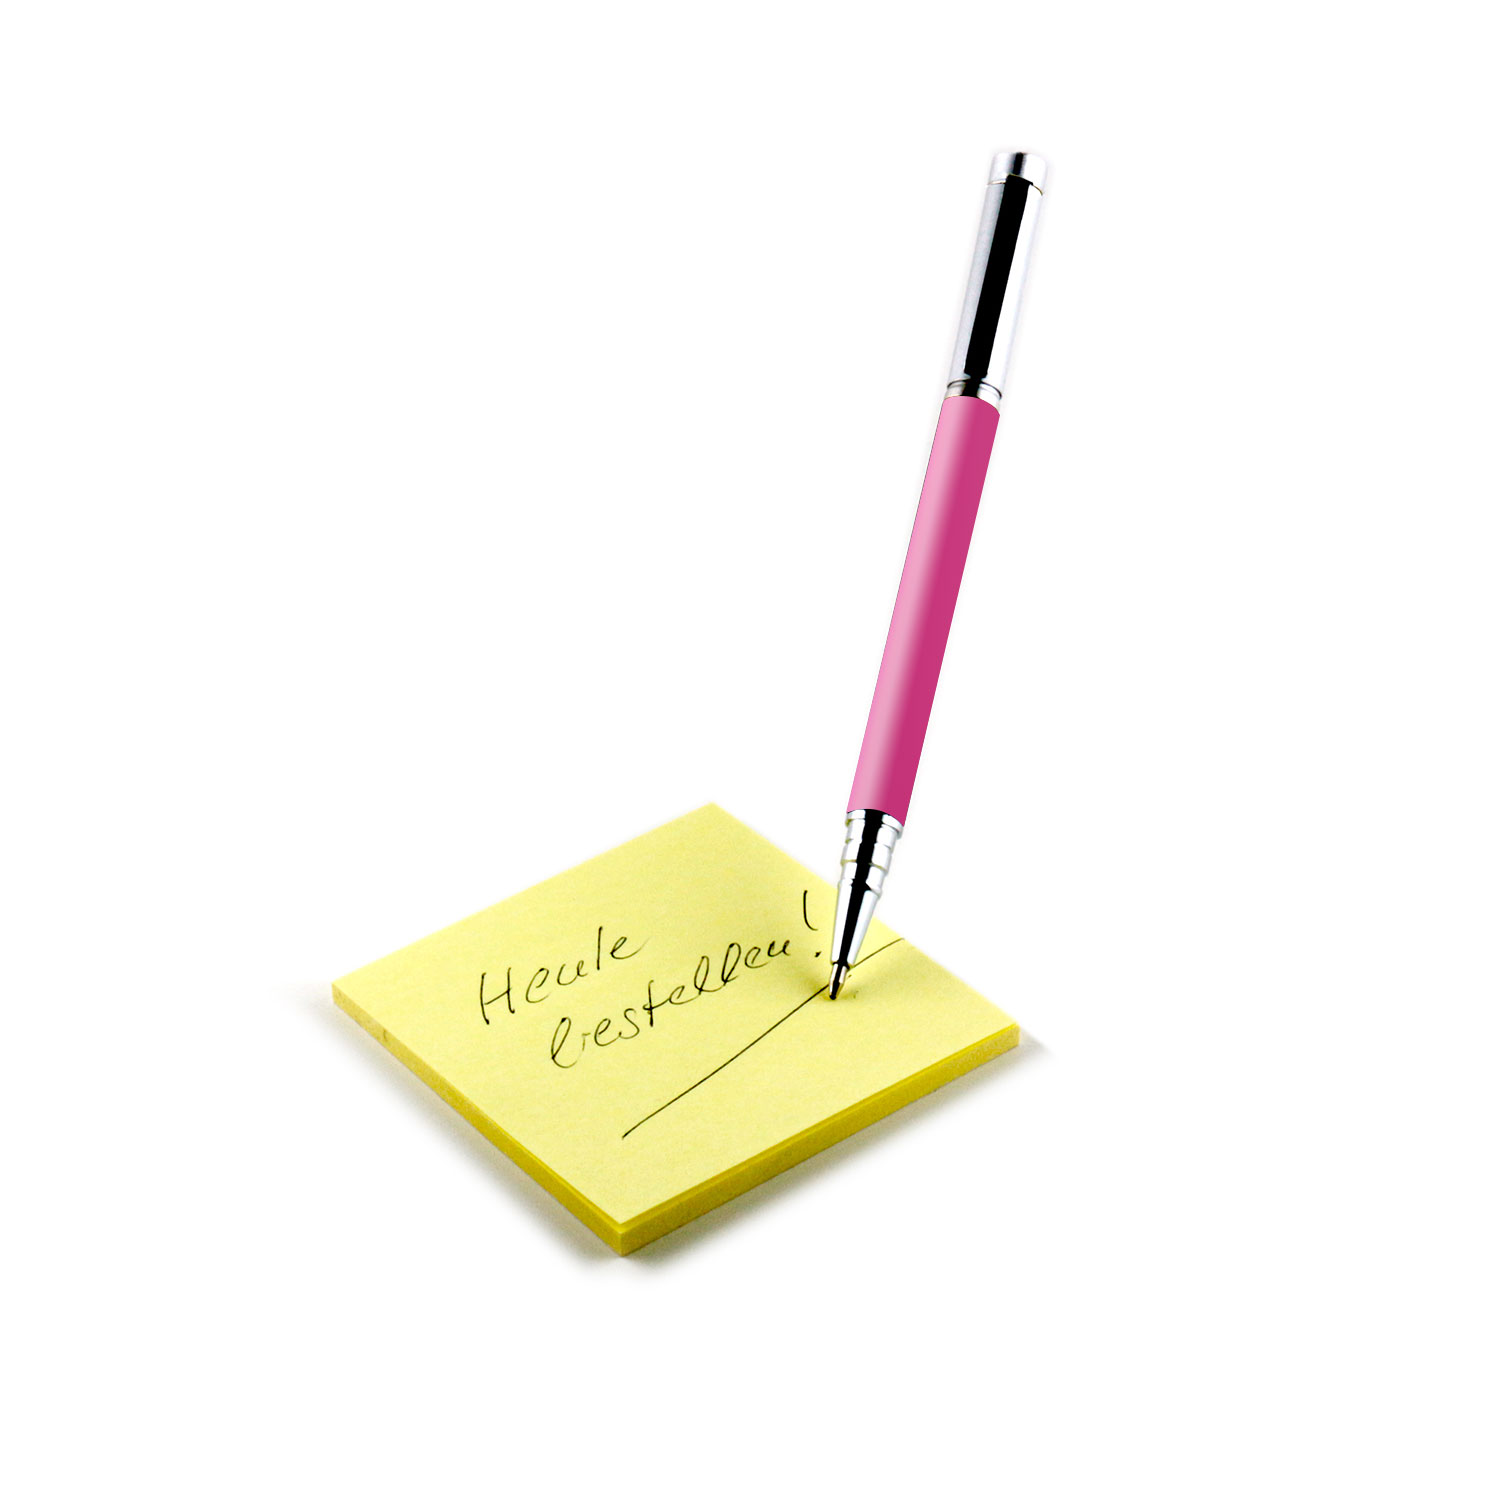 Touchpen Pink ergonomisch | Eingabestift Silber | SLABO | Kugelschreiber